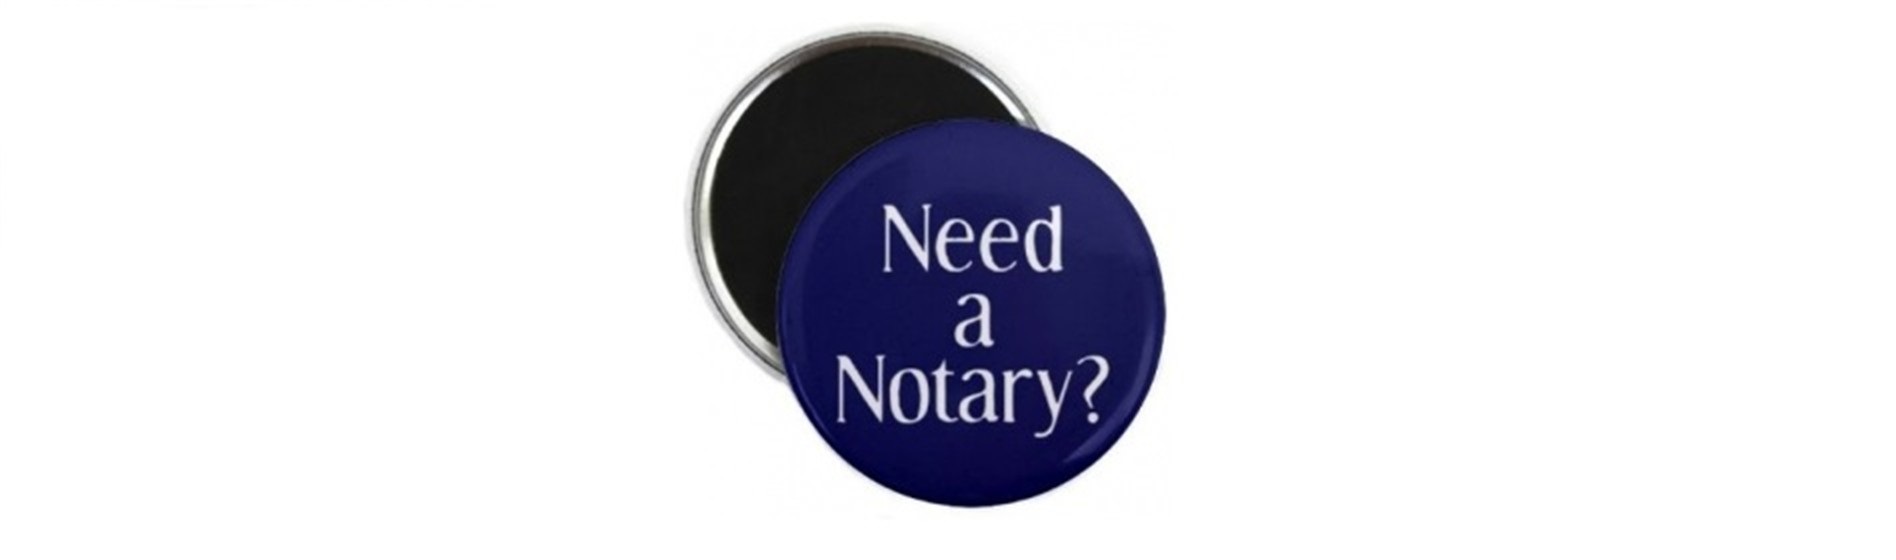 need-notary